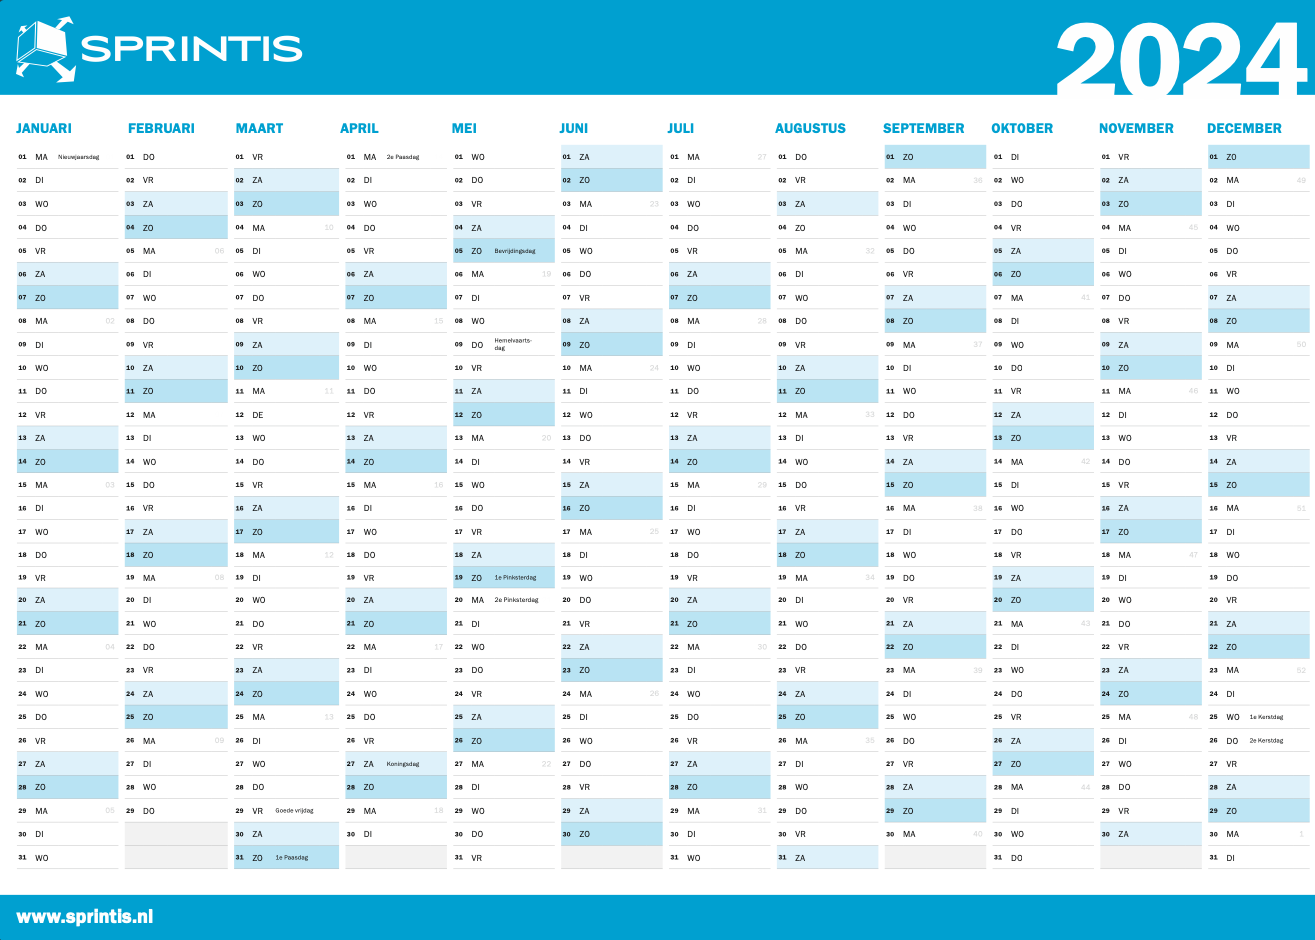 2024 Jahreskalender mit Kalenderwochen DIN A3